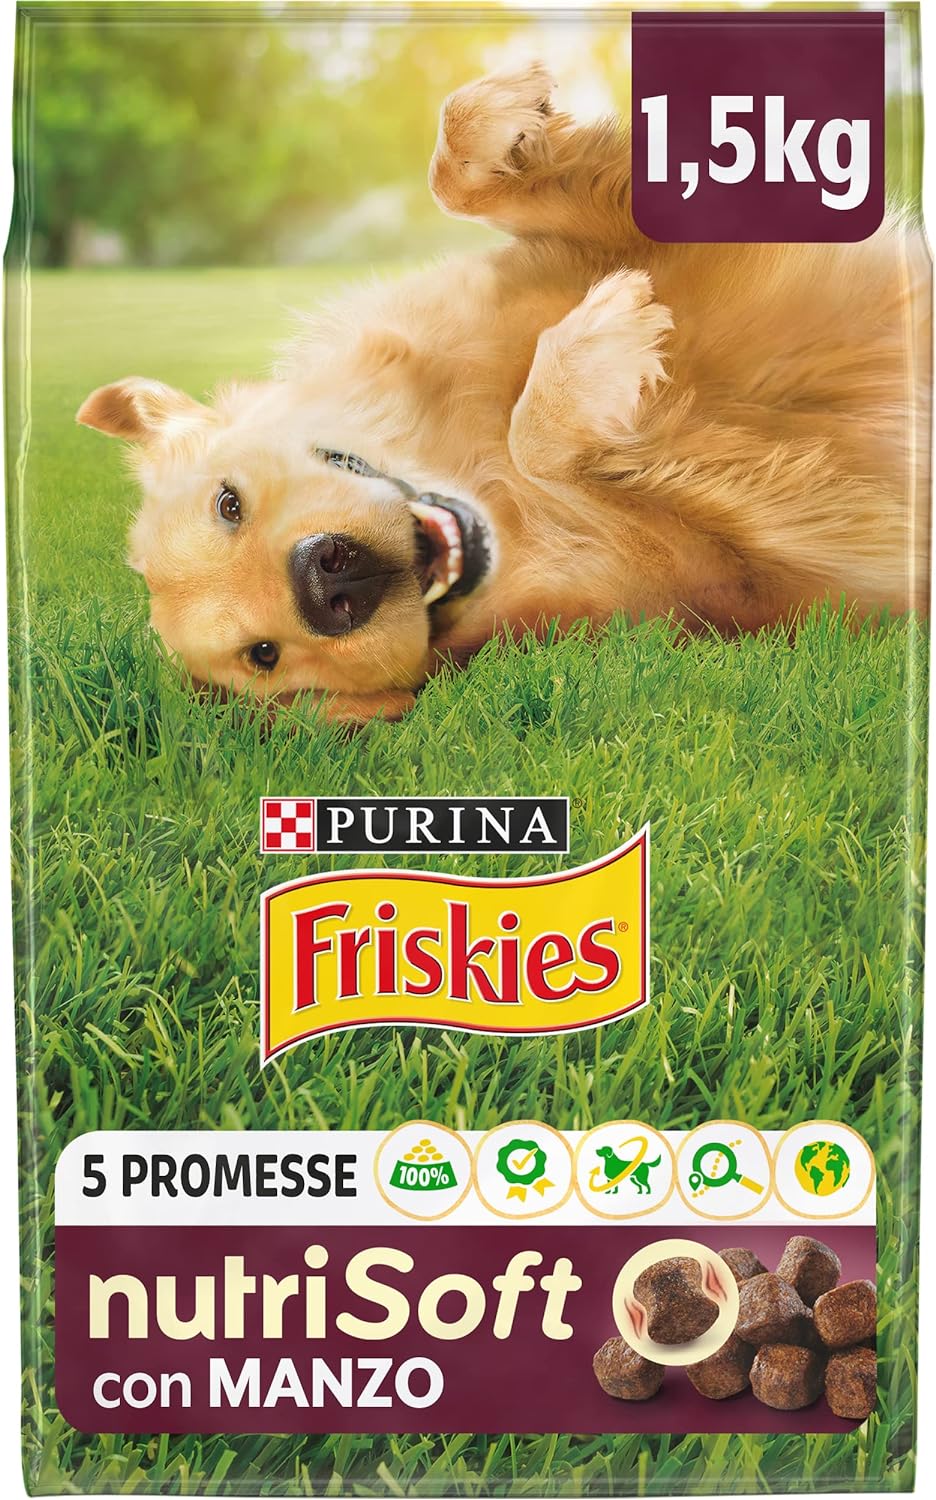 Purina Friskies Nutri Soft Crocchette Cani con Manzo, 6 Confezioni da 1,5 kg